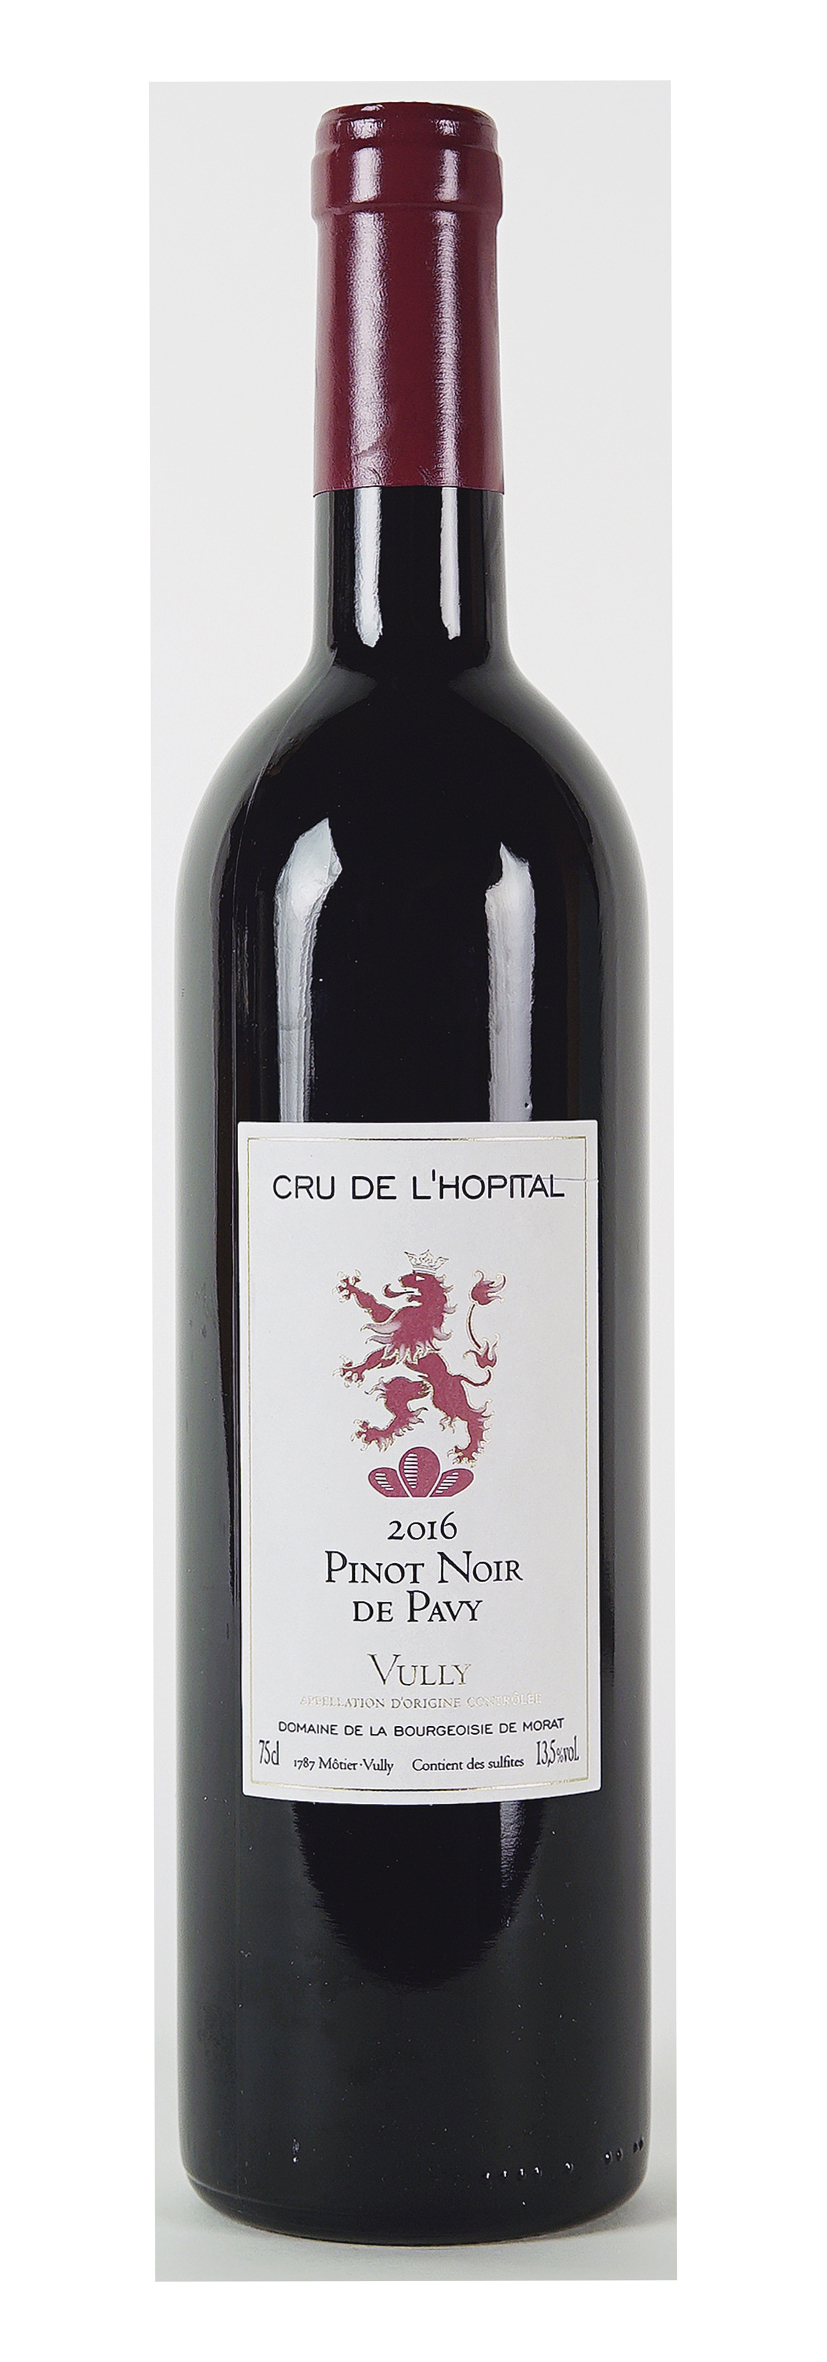 Vully AOC Pinot Noir de Pavy 2016